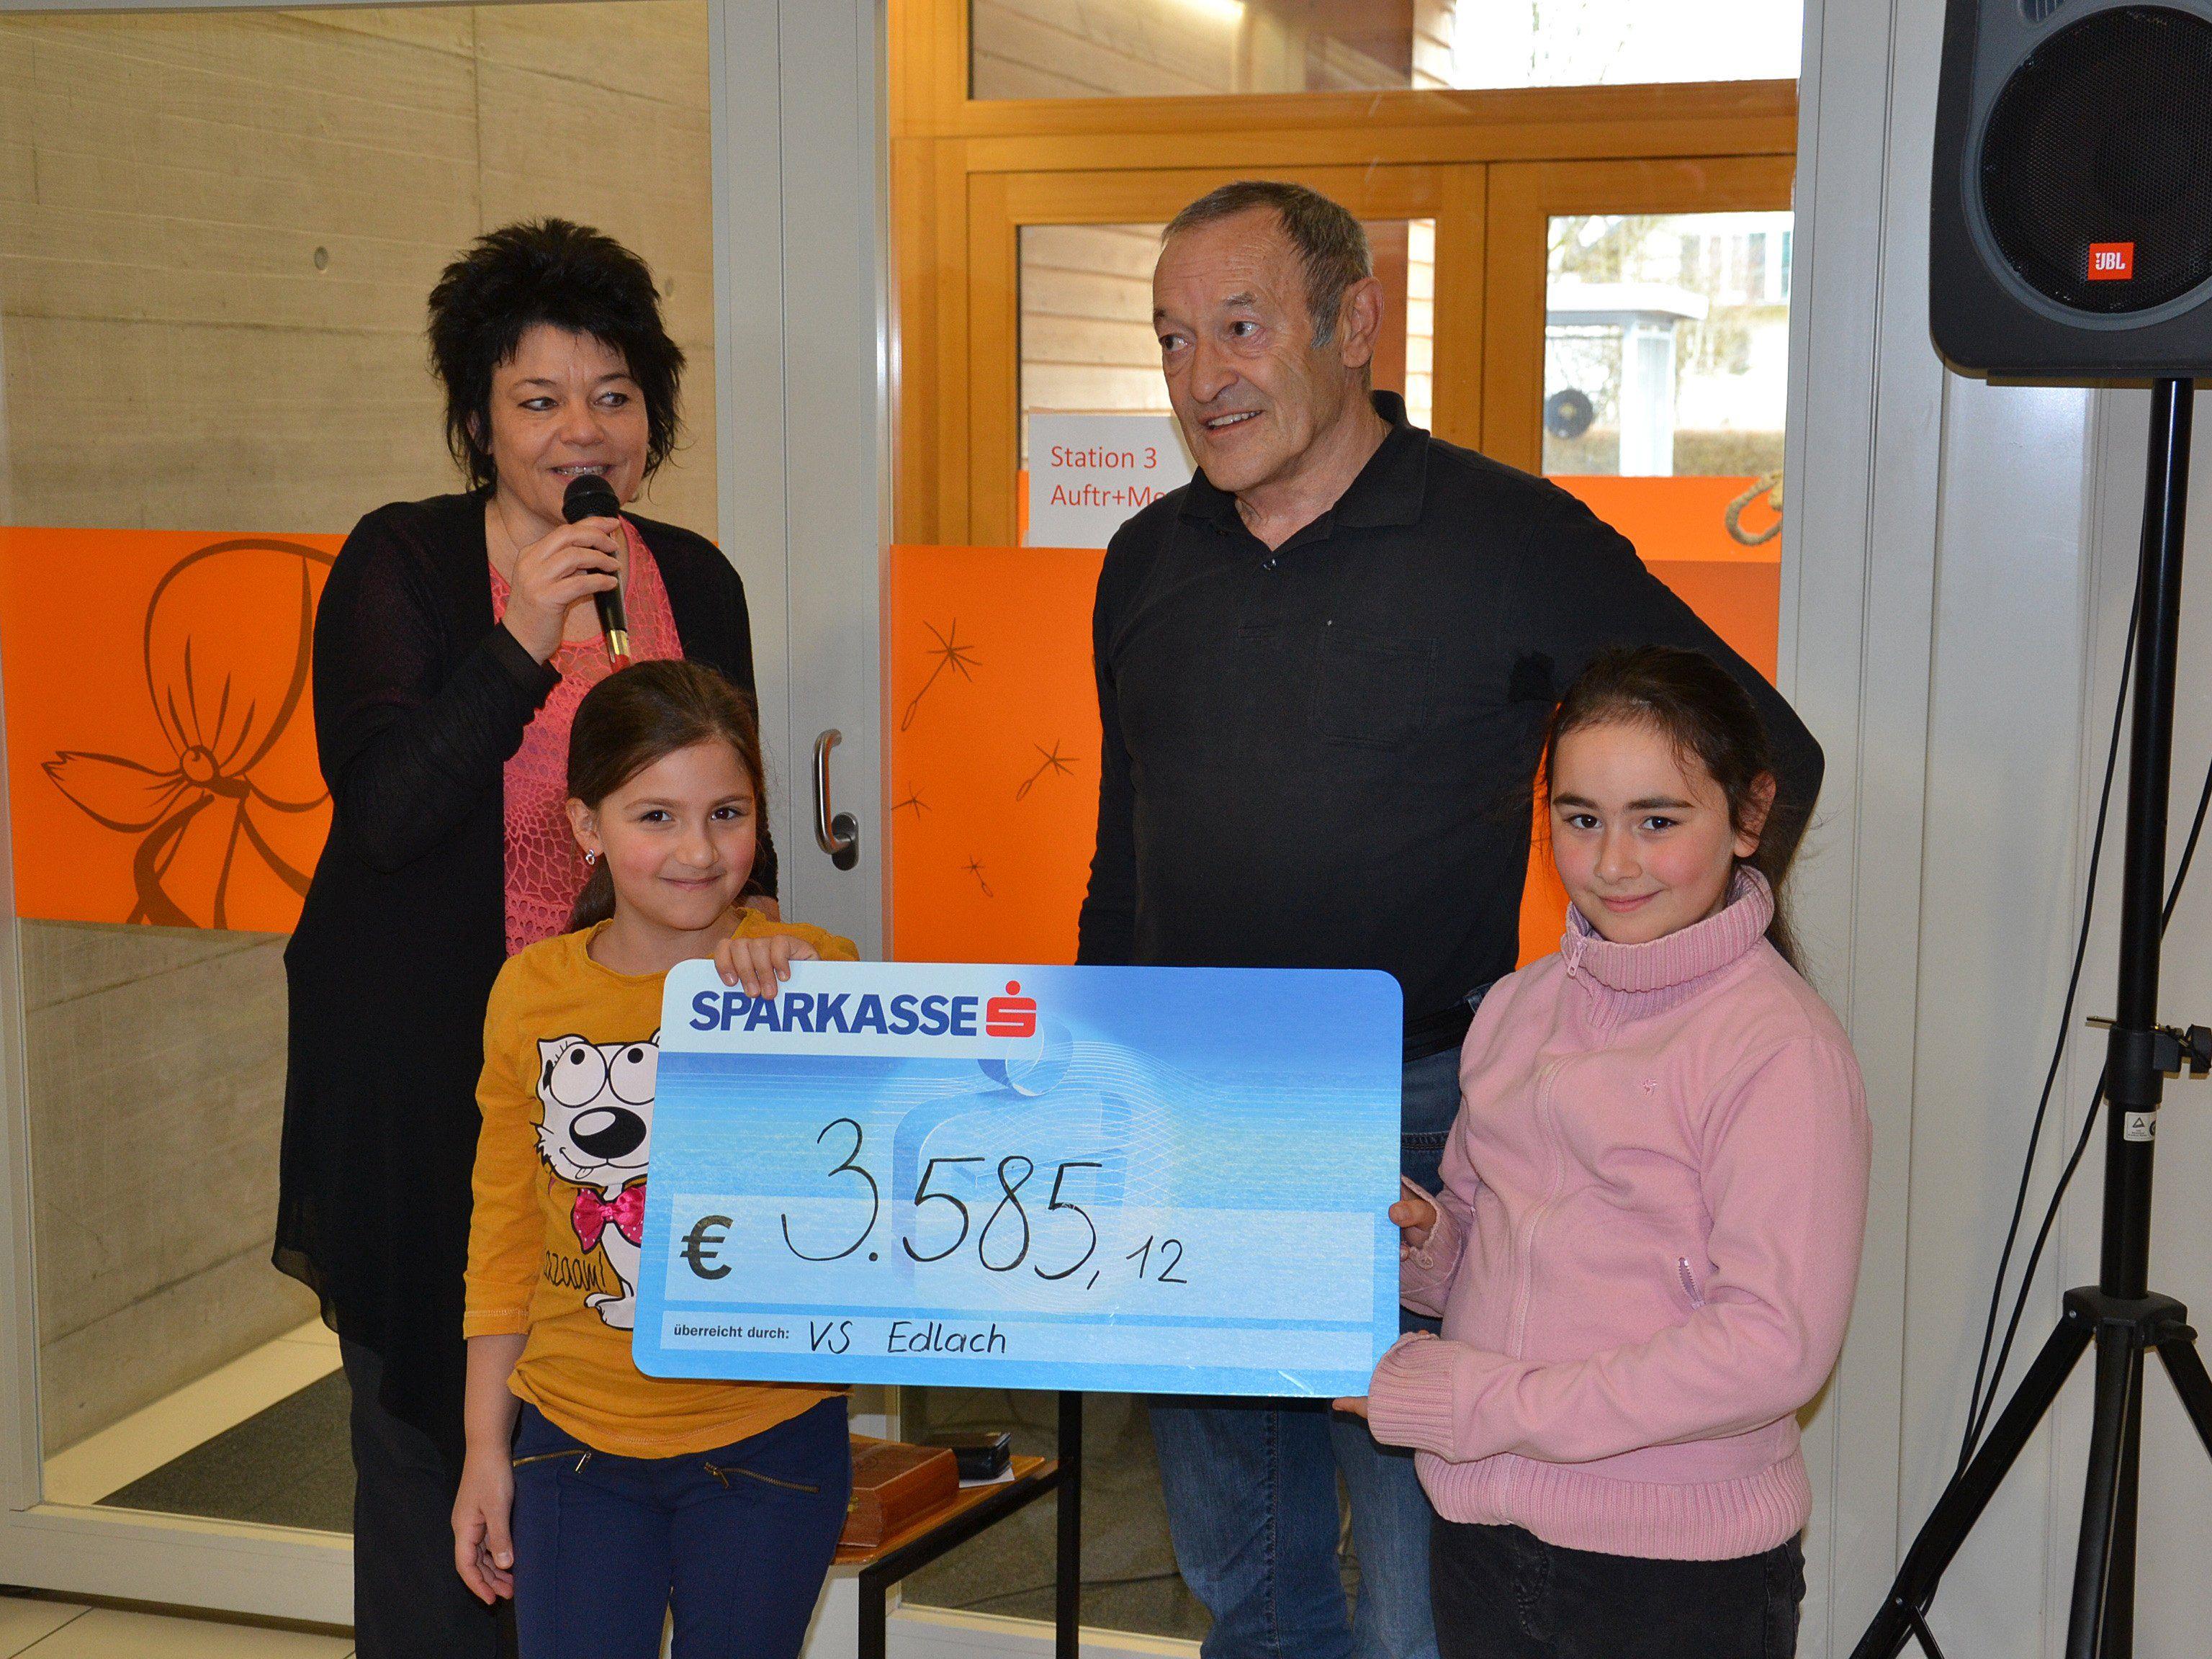 Paul Wohlgenannt freute sich über 3.585,12 Euro für sein Albanienprojekt „Schüler helfen Schülern“.